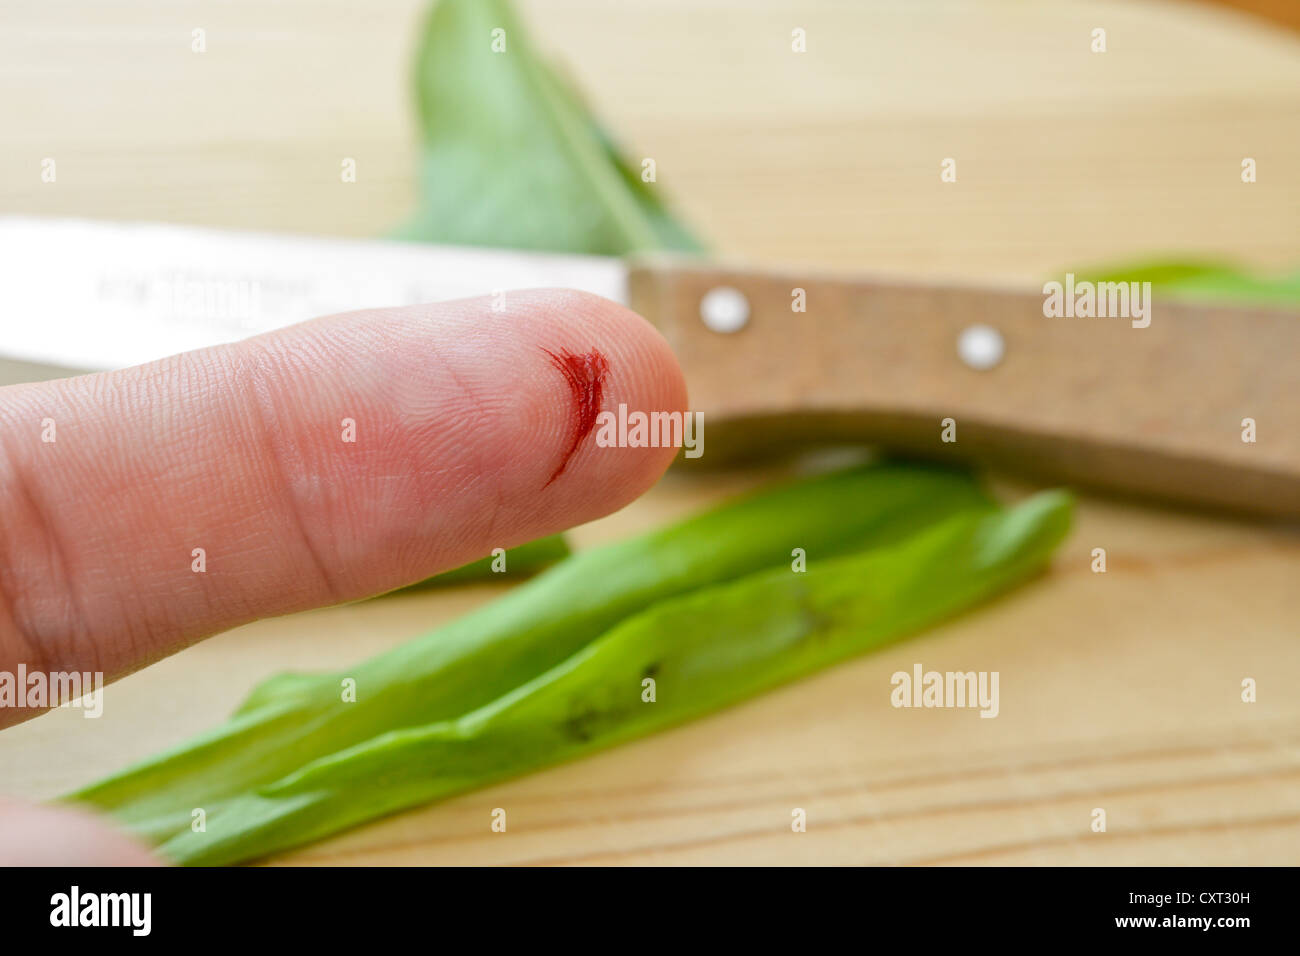 Lo spurgo del dito indice, lacerazione con un coltello da cucina, incidente domestico Foto Stock